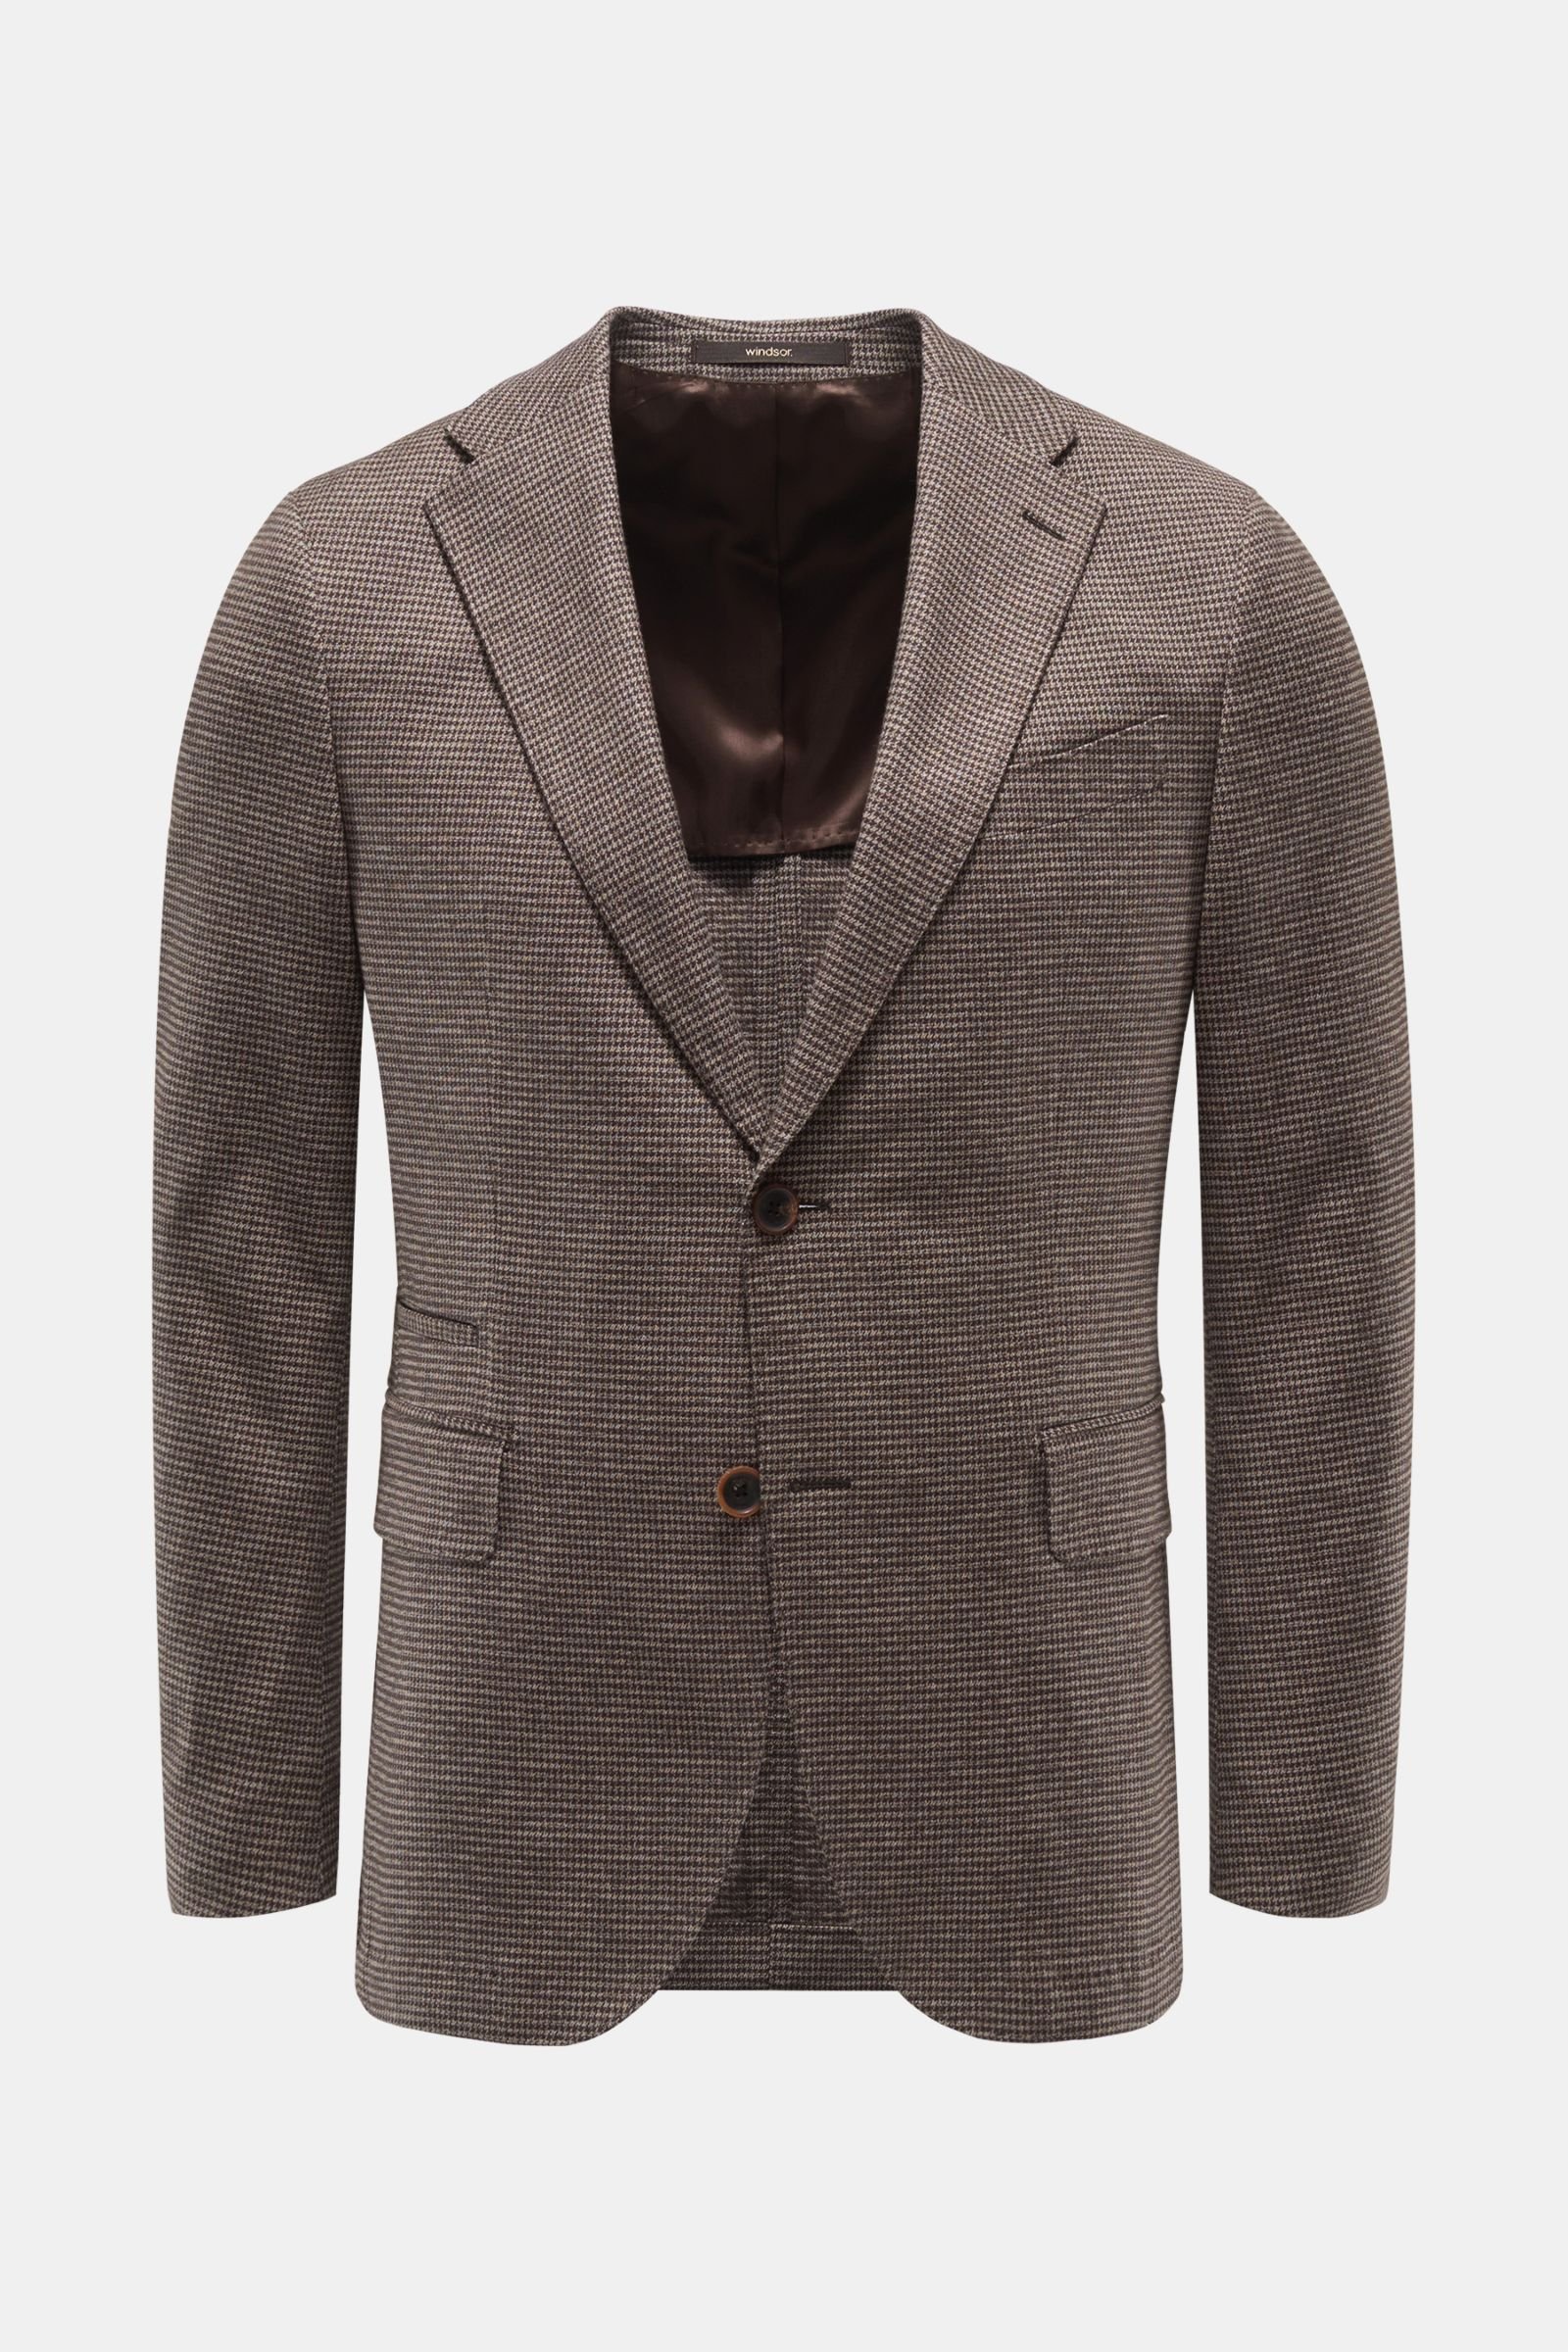 Smart-casual jacket 'Solaro' grey-brown/dark brown checked